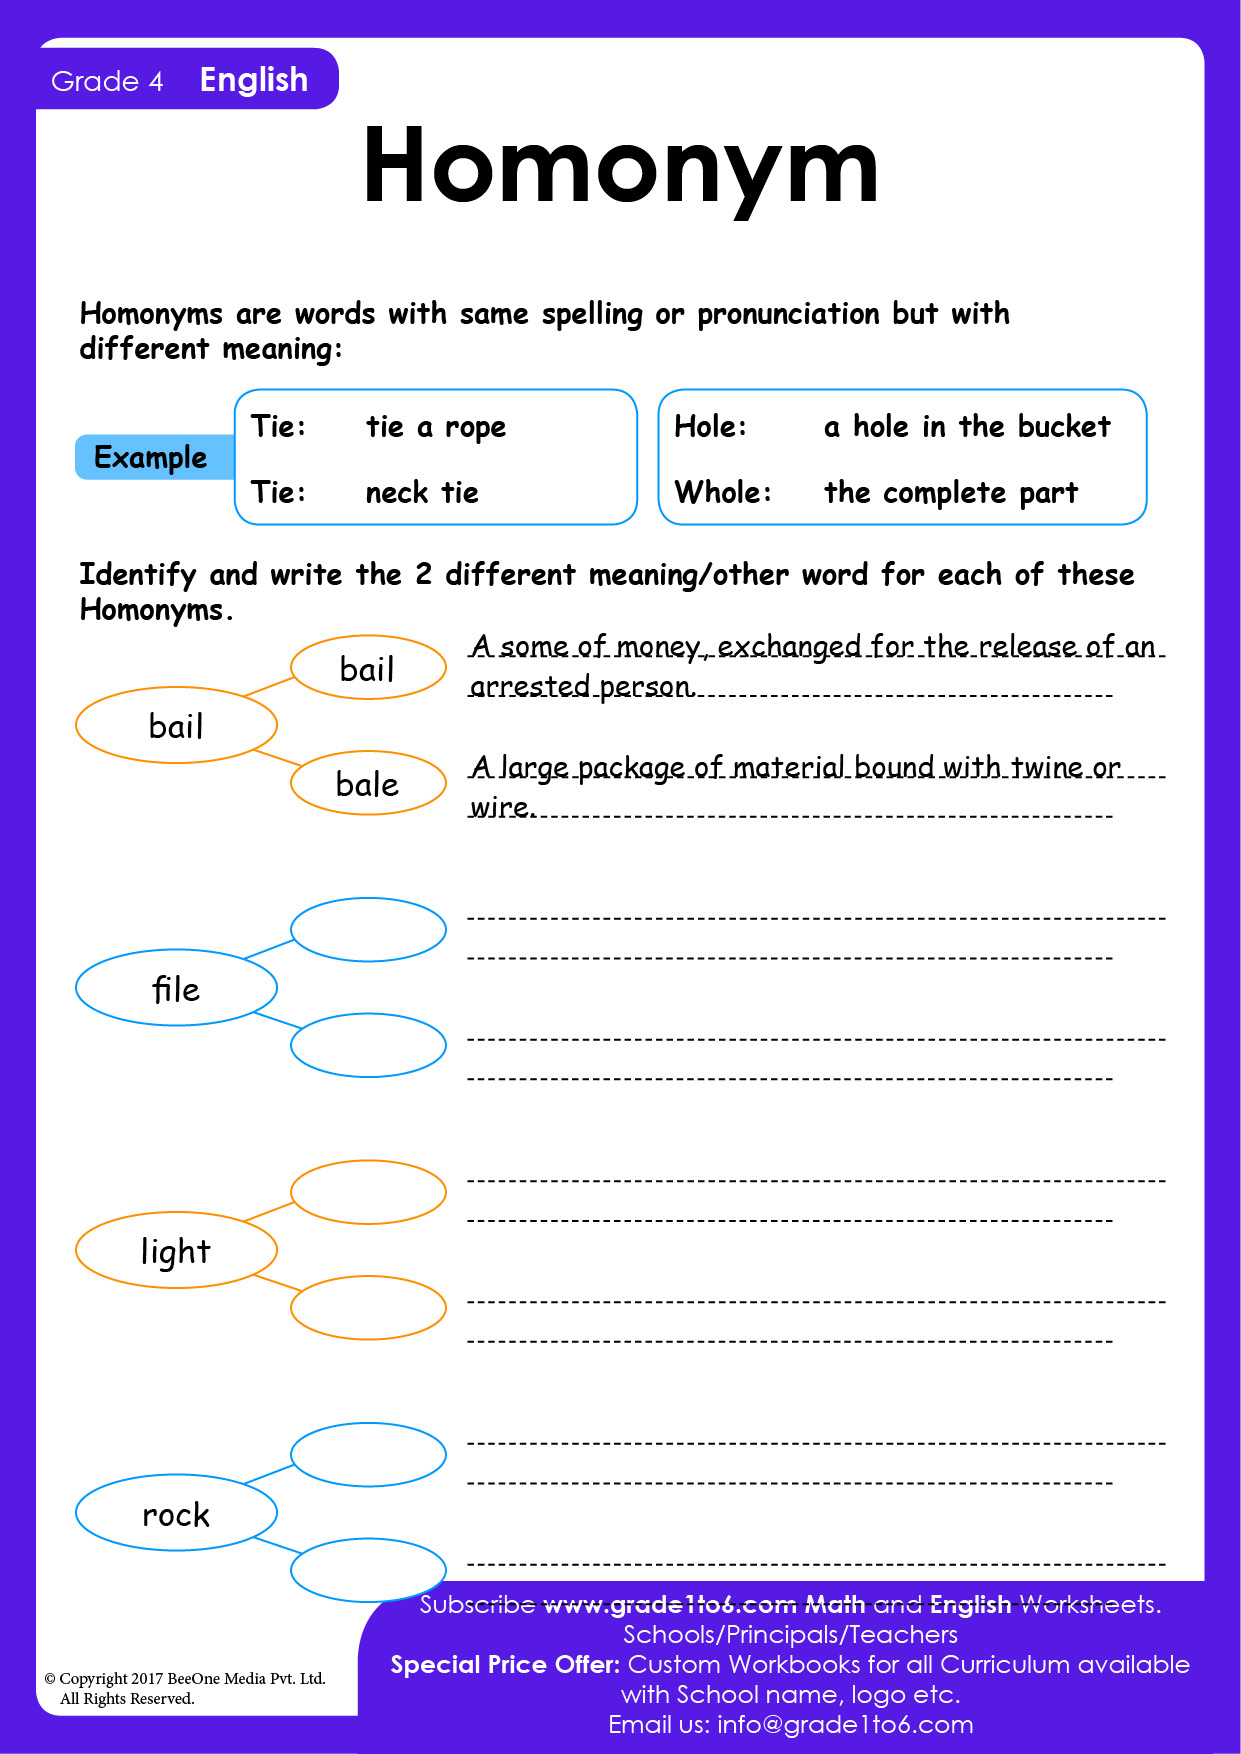 homonyms-worksheet-for-grade-4-grade1to6